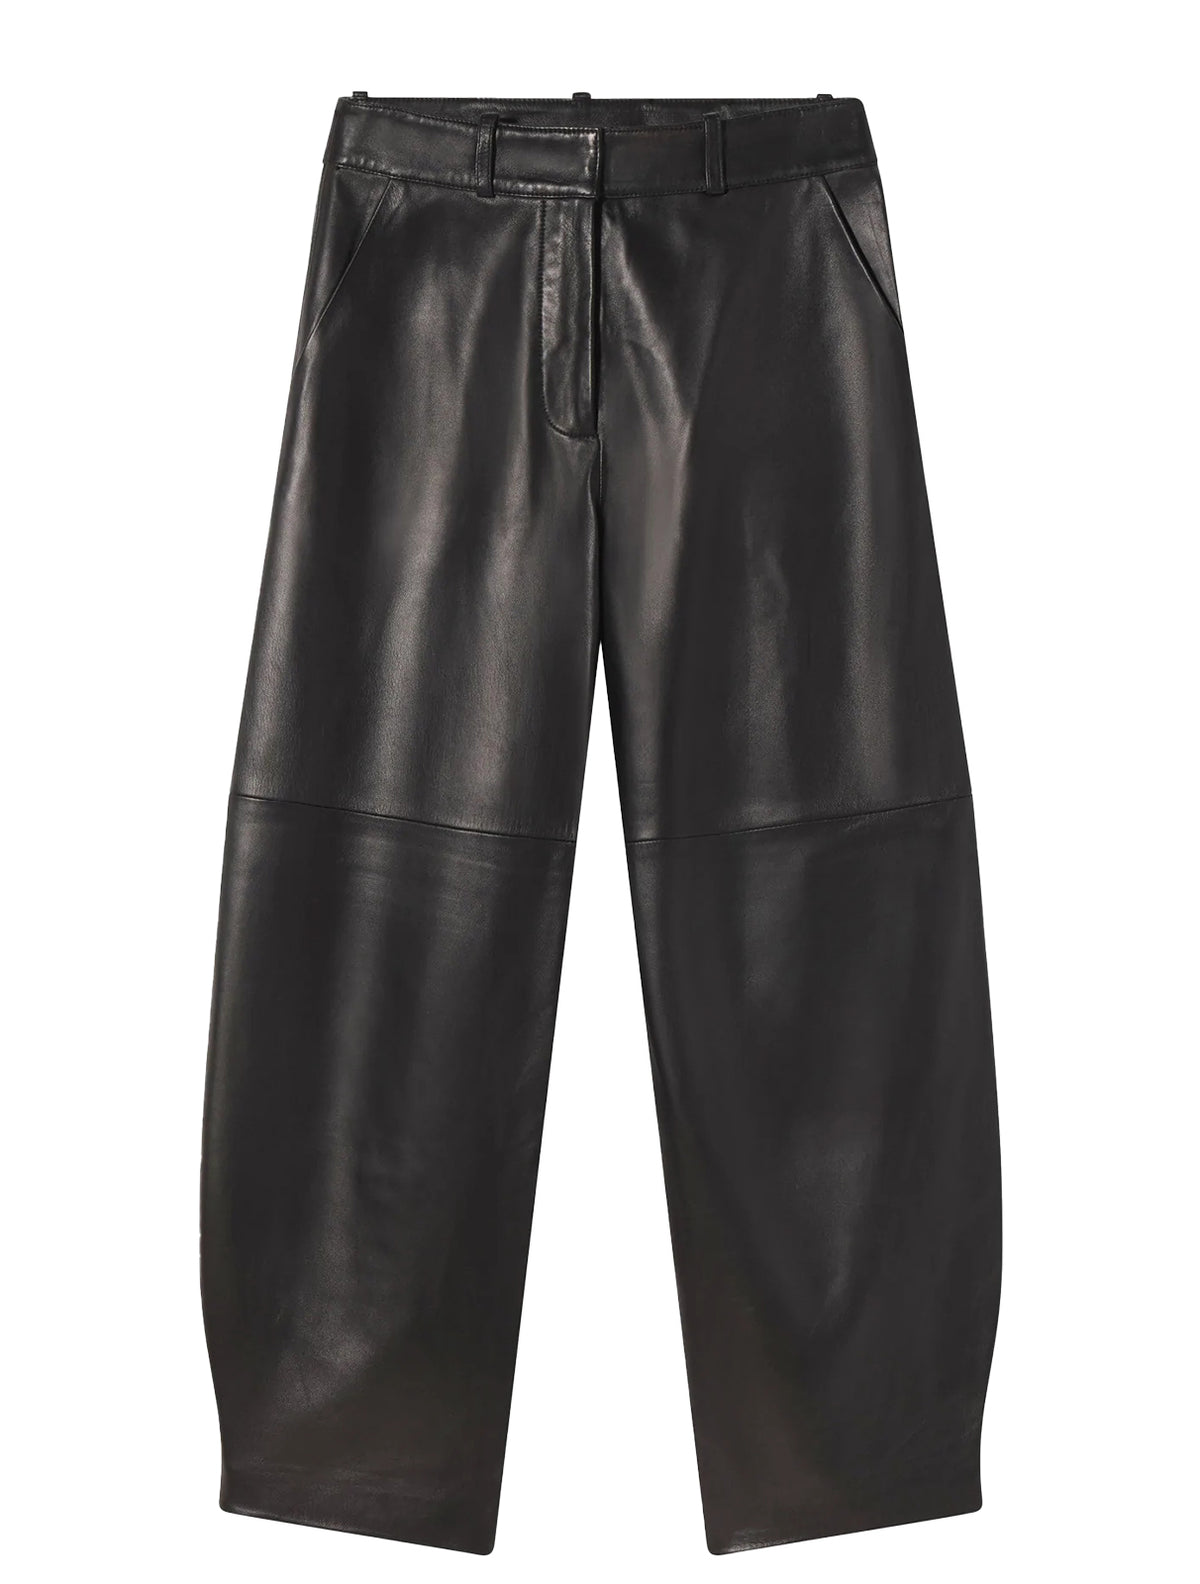 Shop Co Leather Pants Online | Camargue Fashion Australia